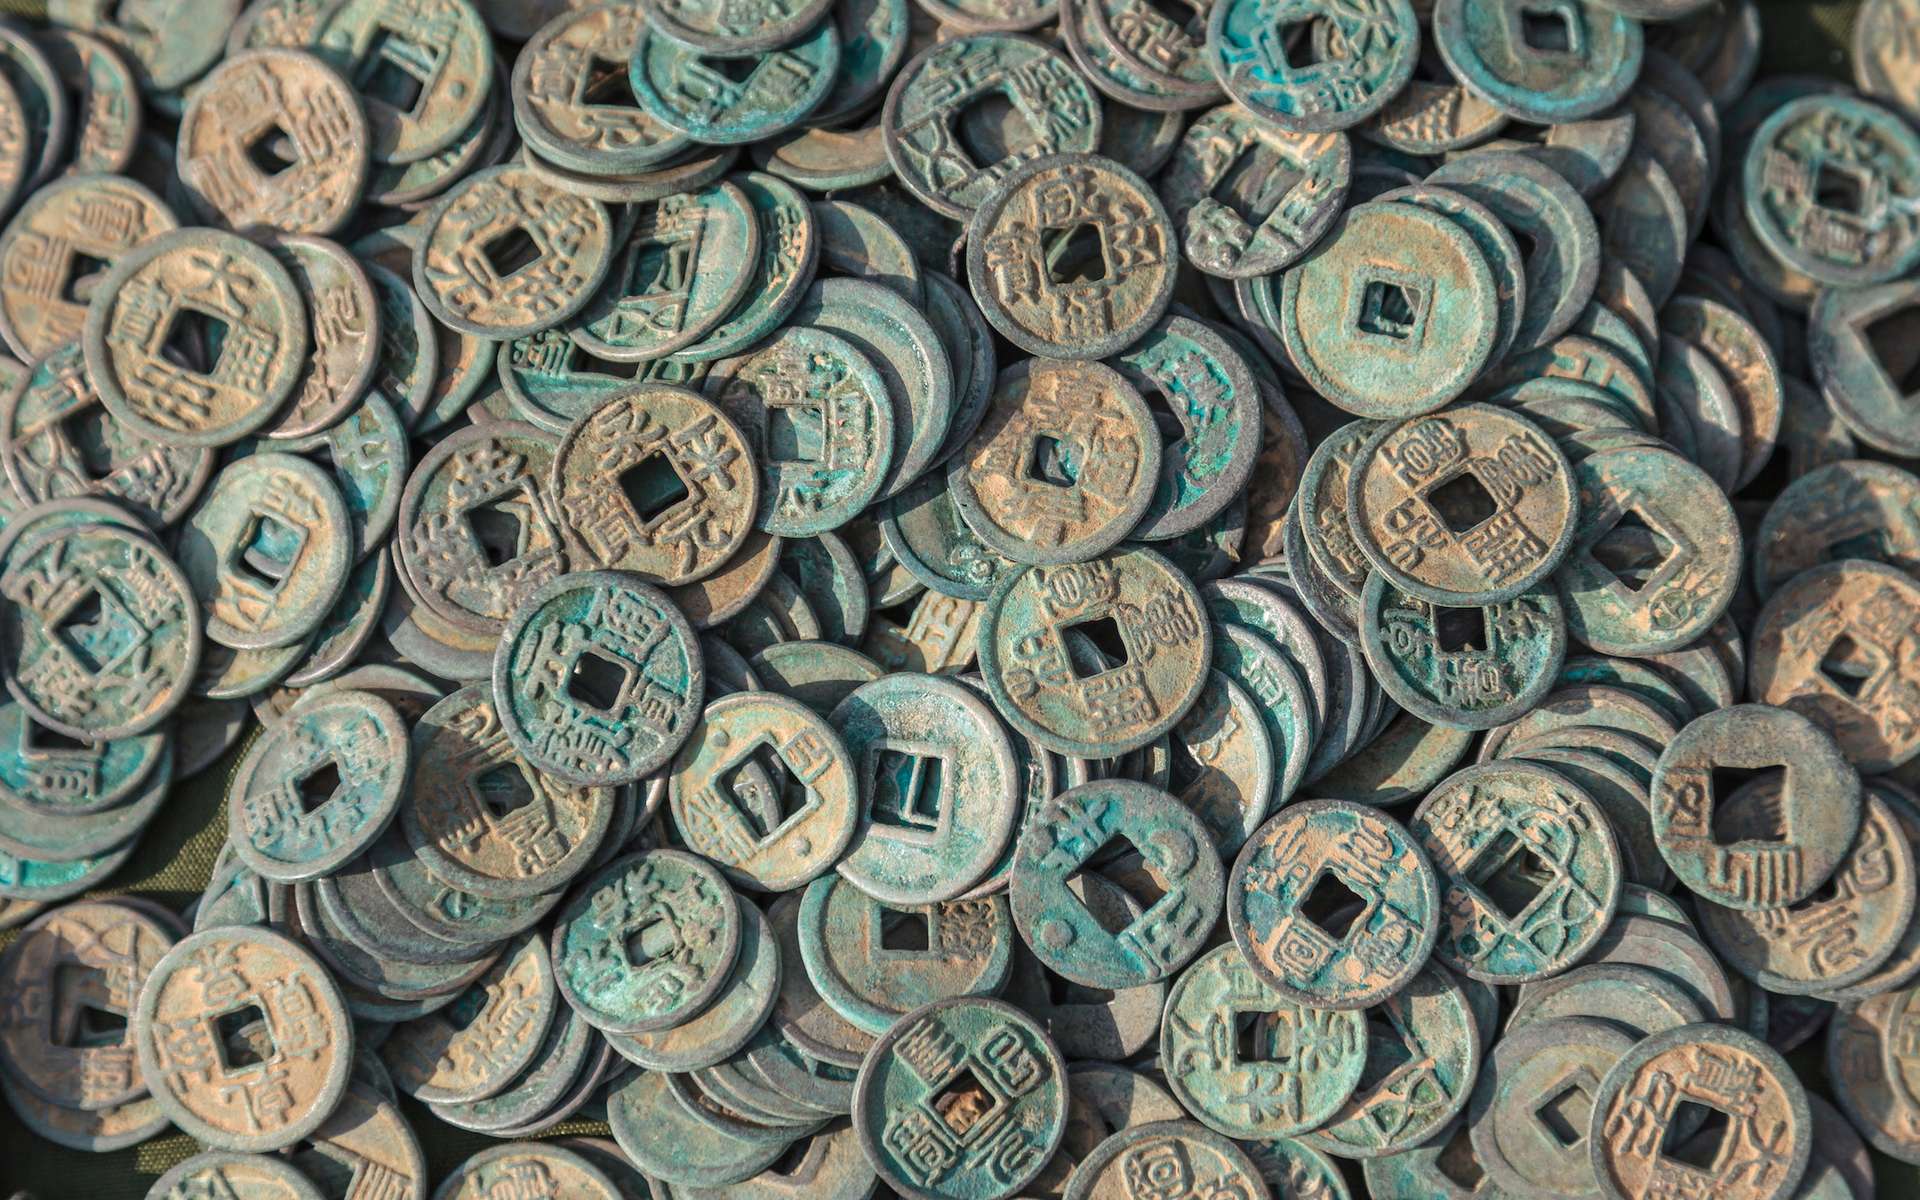 Un trésor de 100 000 pièces impériales chinoises déterré au Japon !